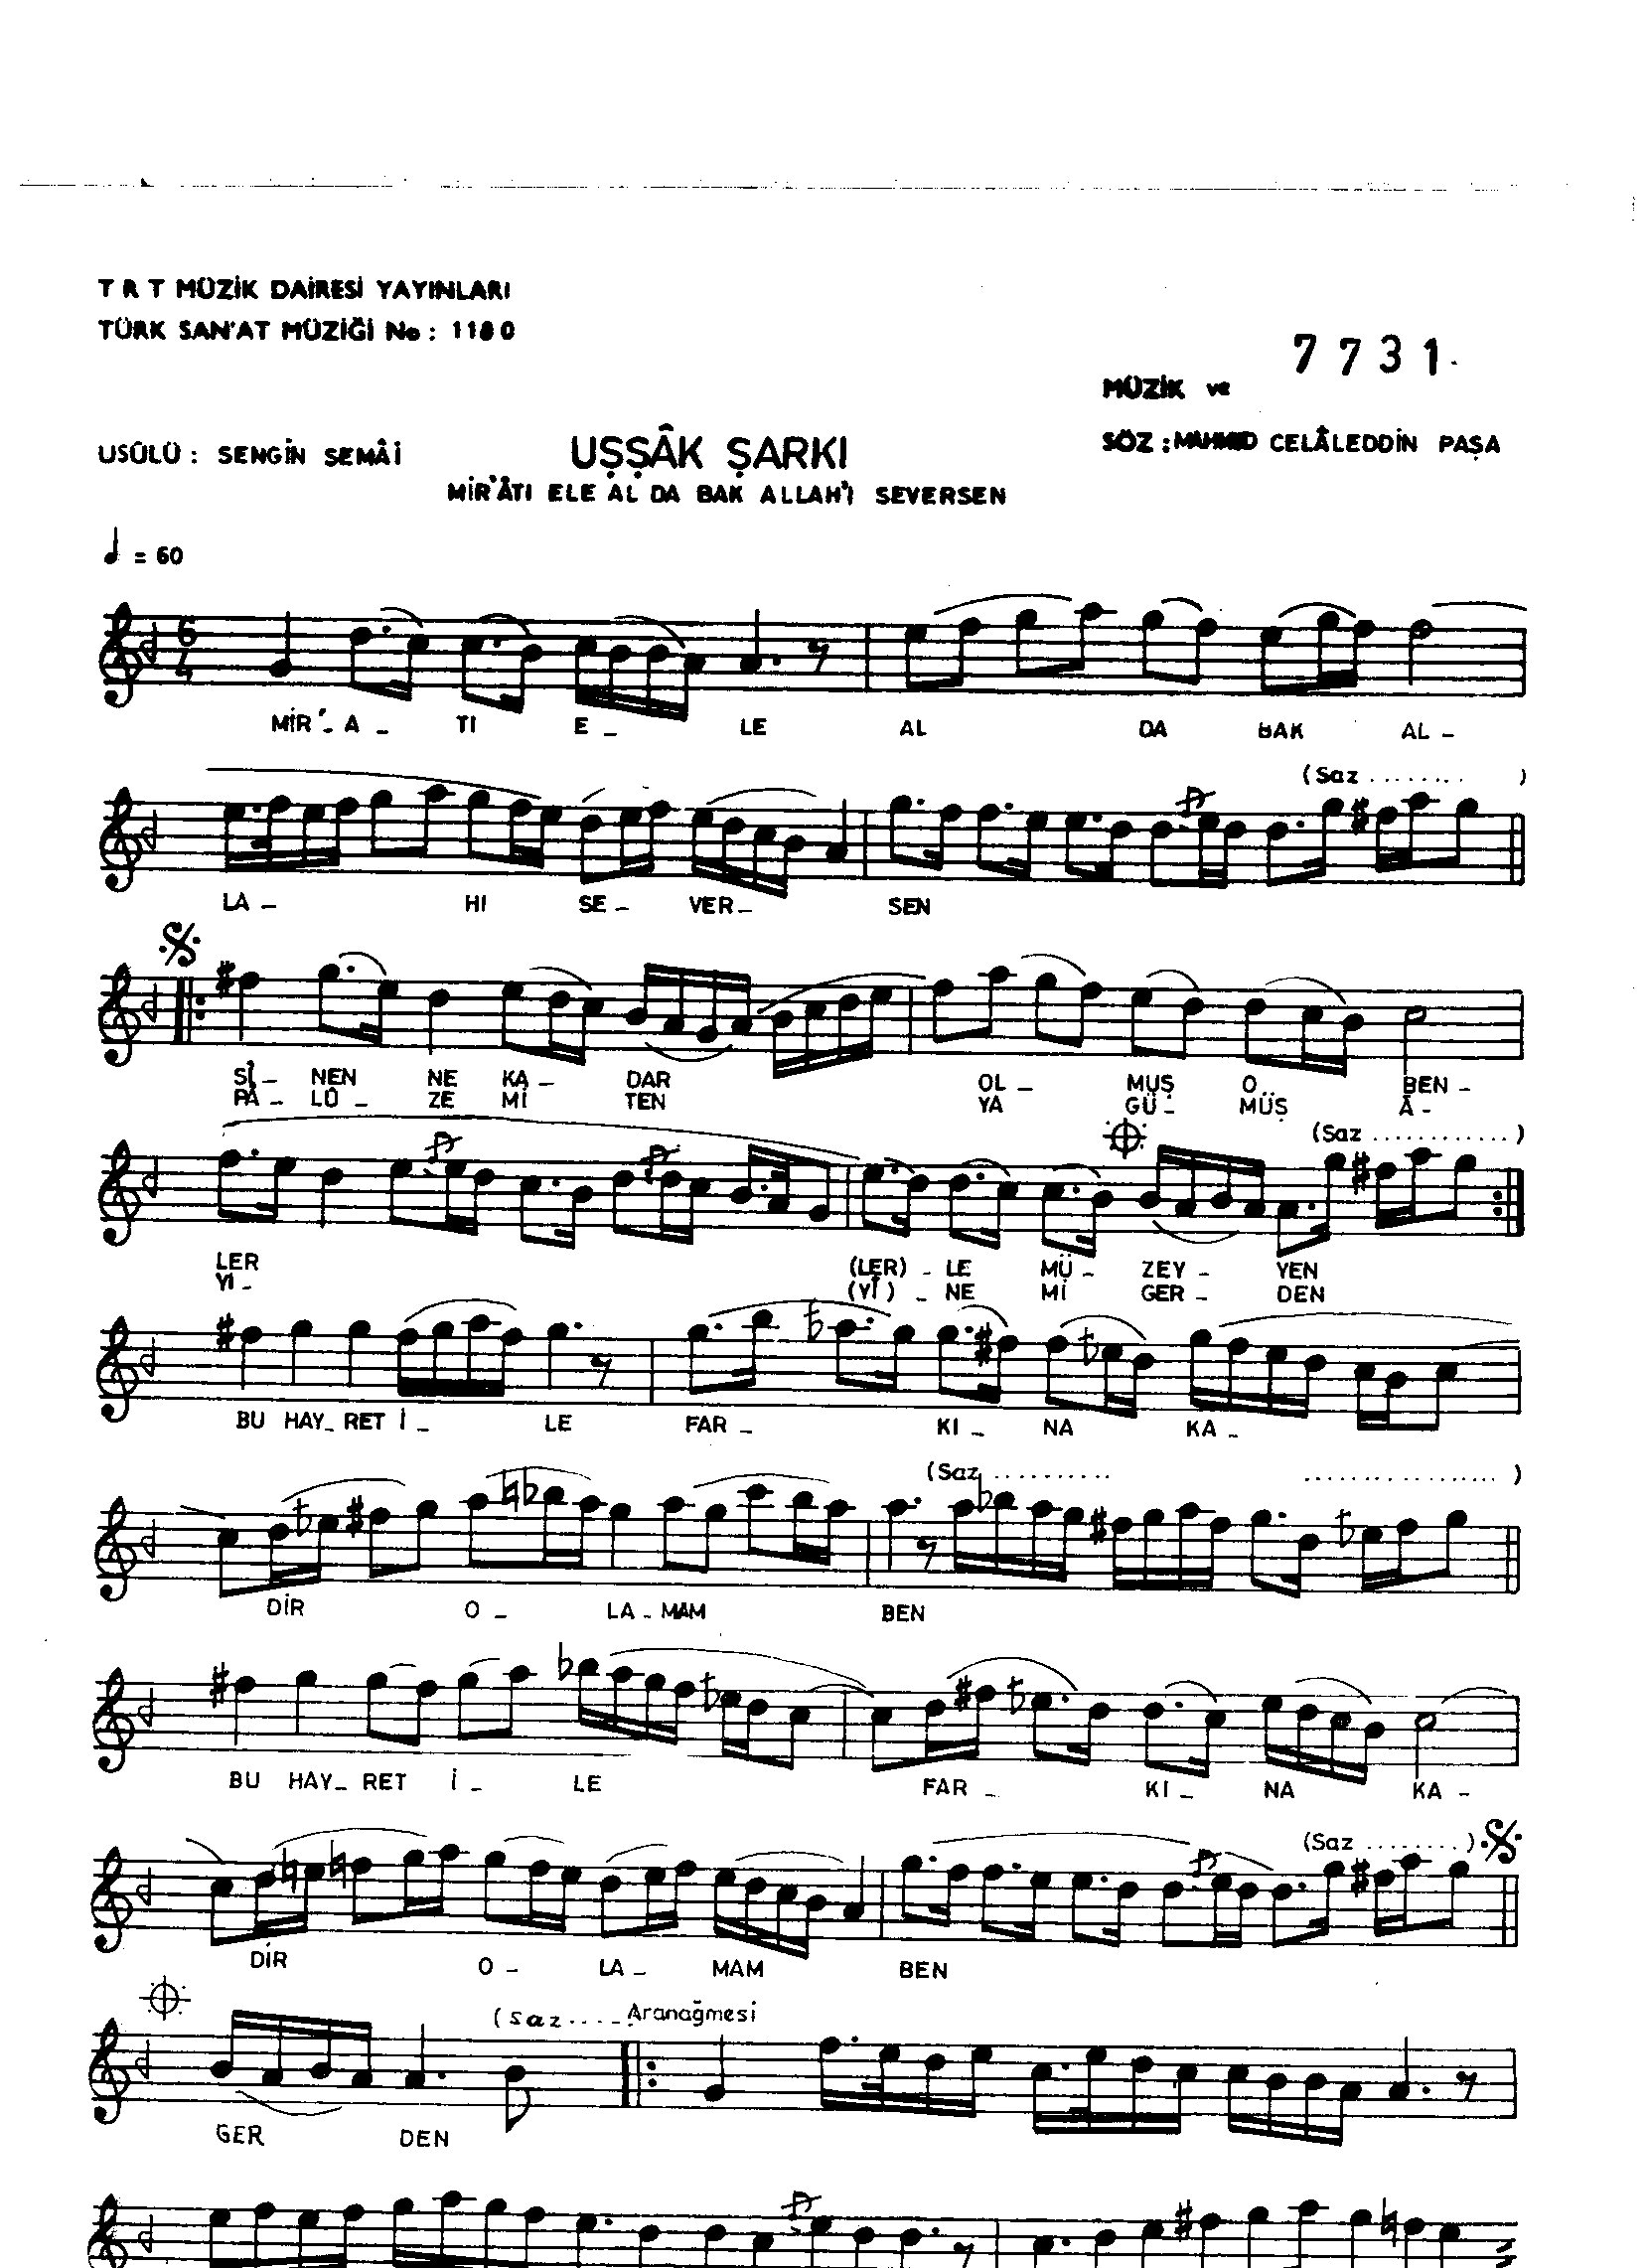 Uşşak - Şarkı - Mahmut Celâleddin Paşa - Sayfa 1